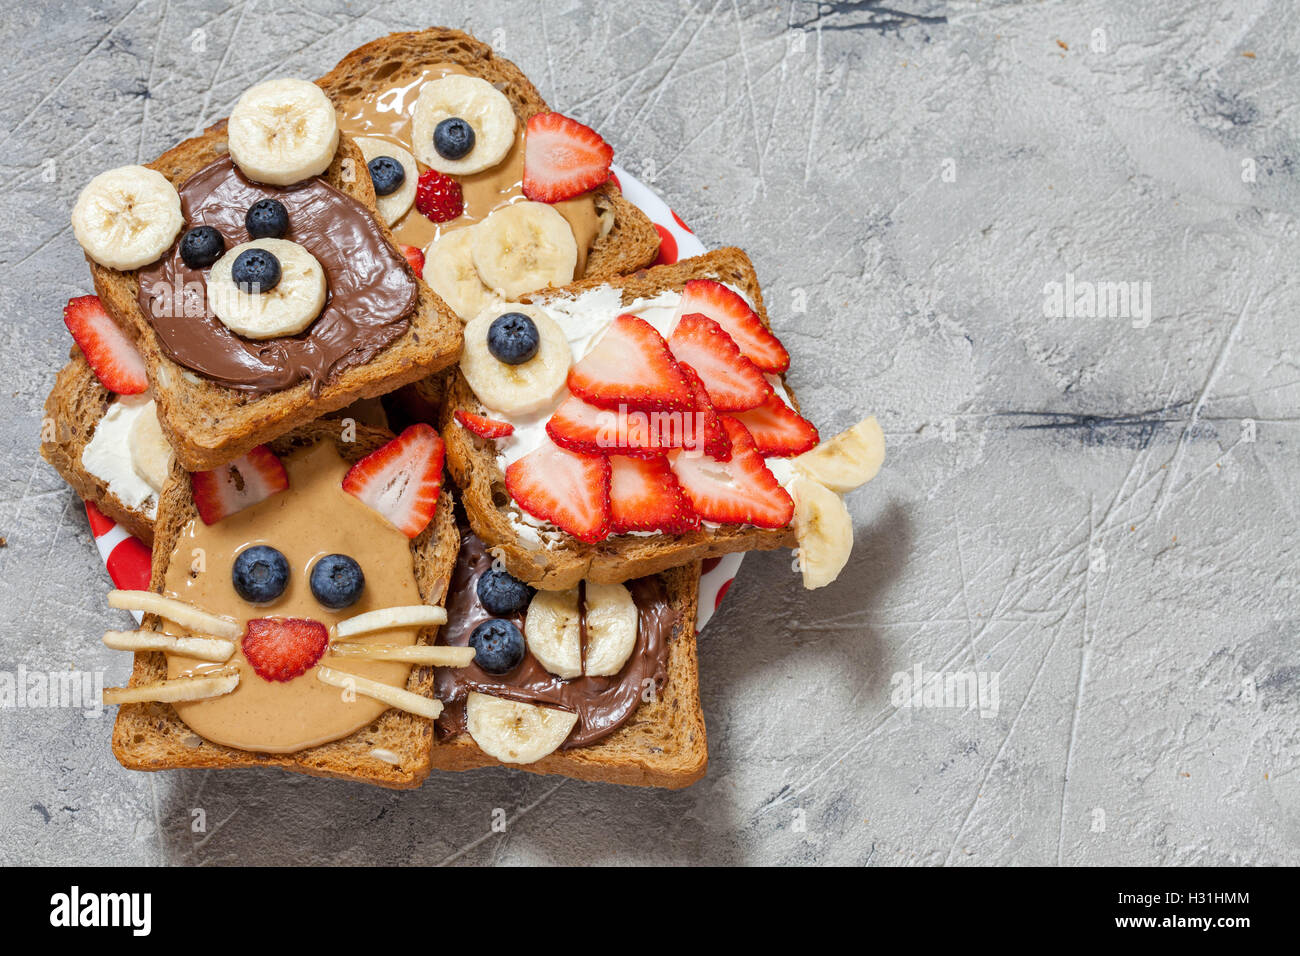 Animaux à drôle avec toasts à tartiner, banane, fraise et myrtille Banque D'Images